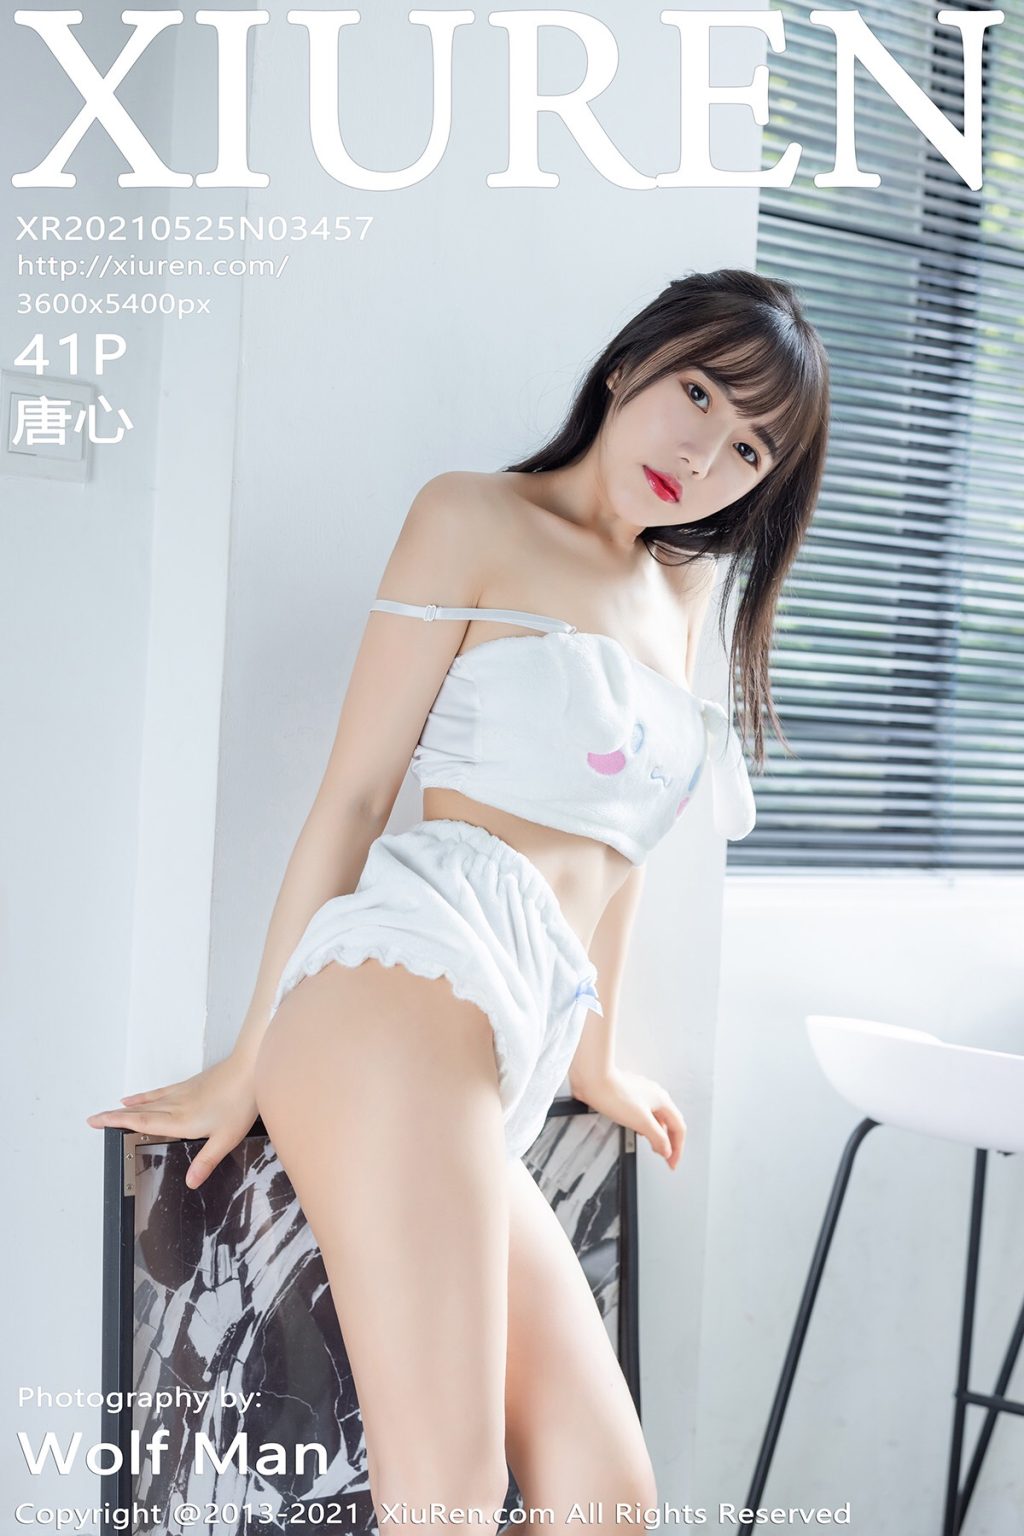 Watch sexy XIUREN No.3457: Tang Xin (唐心) photos